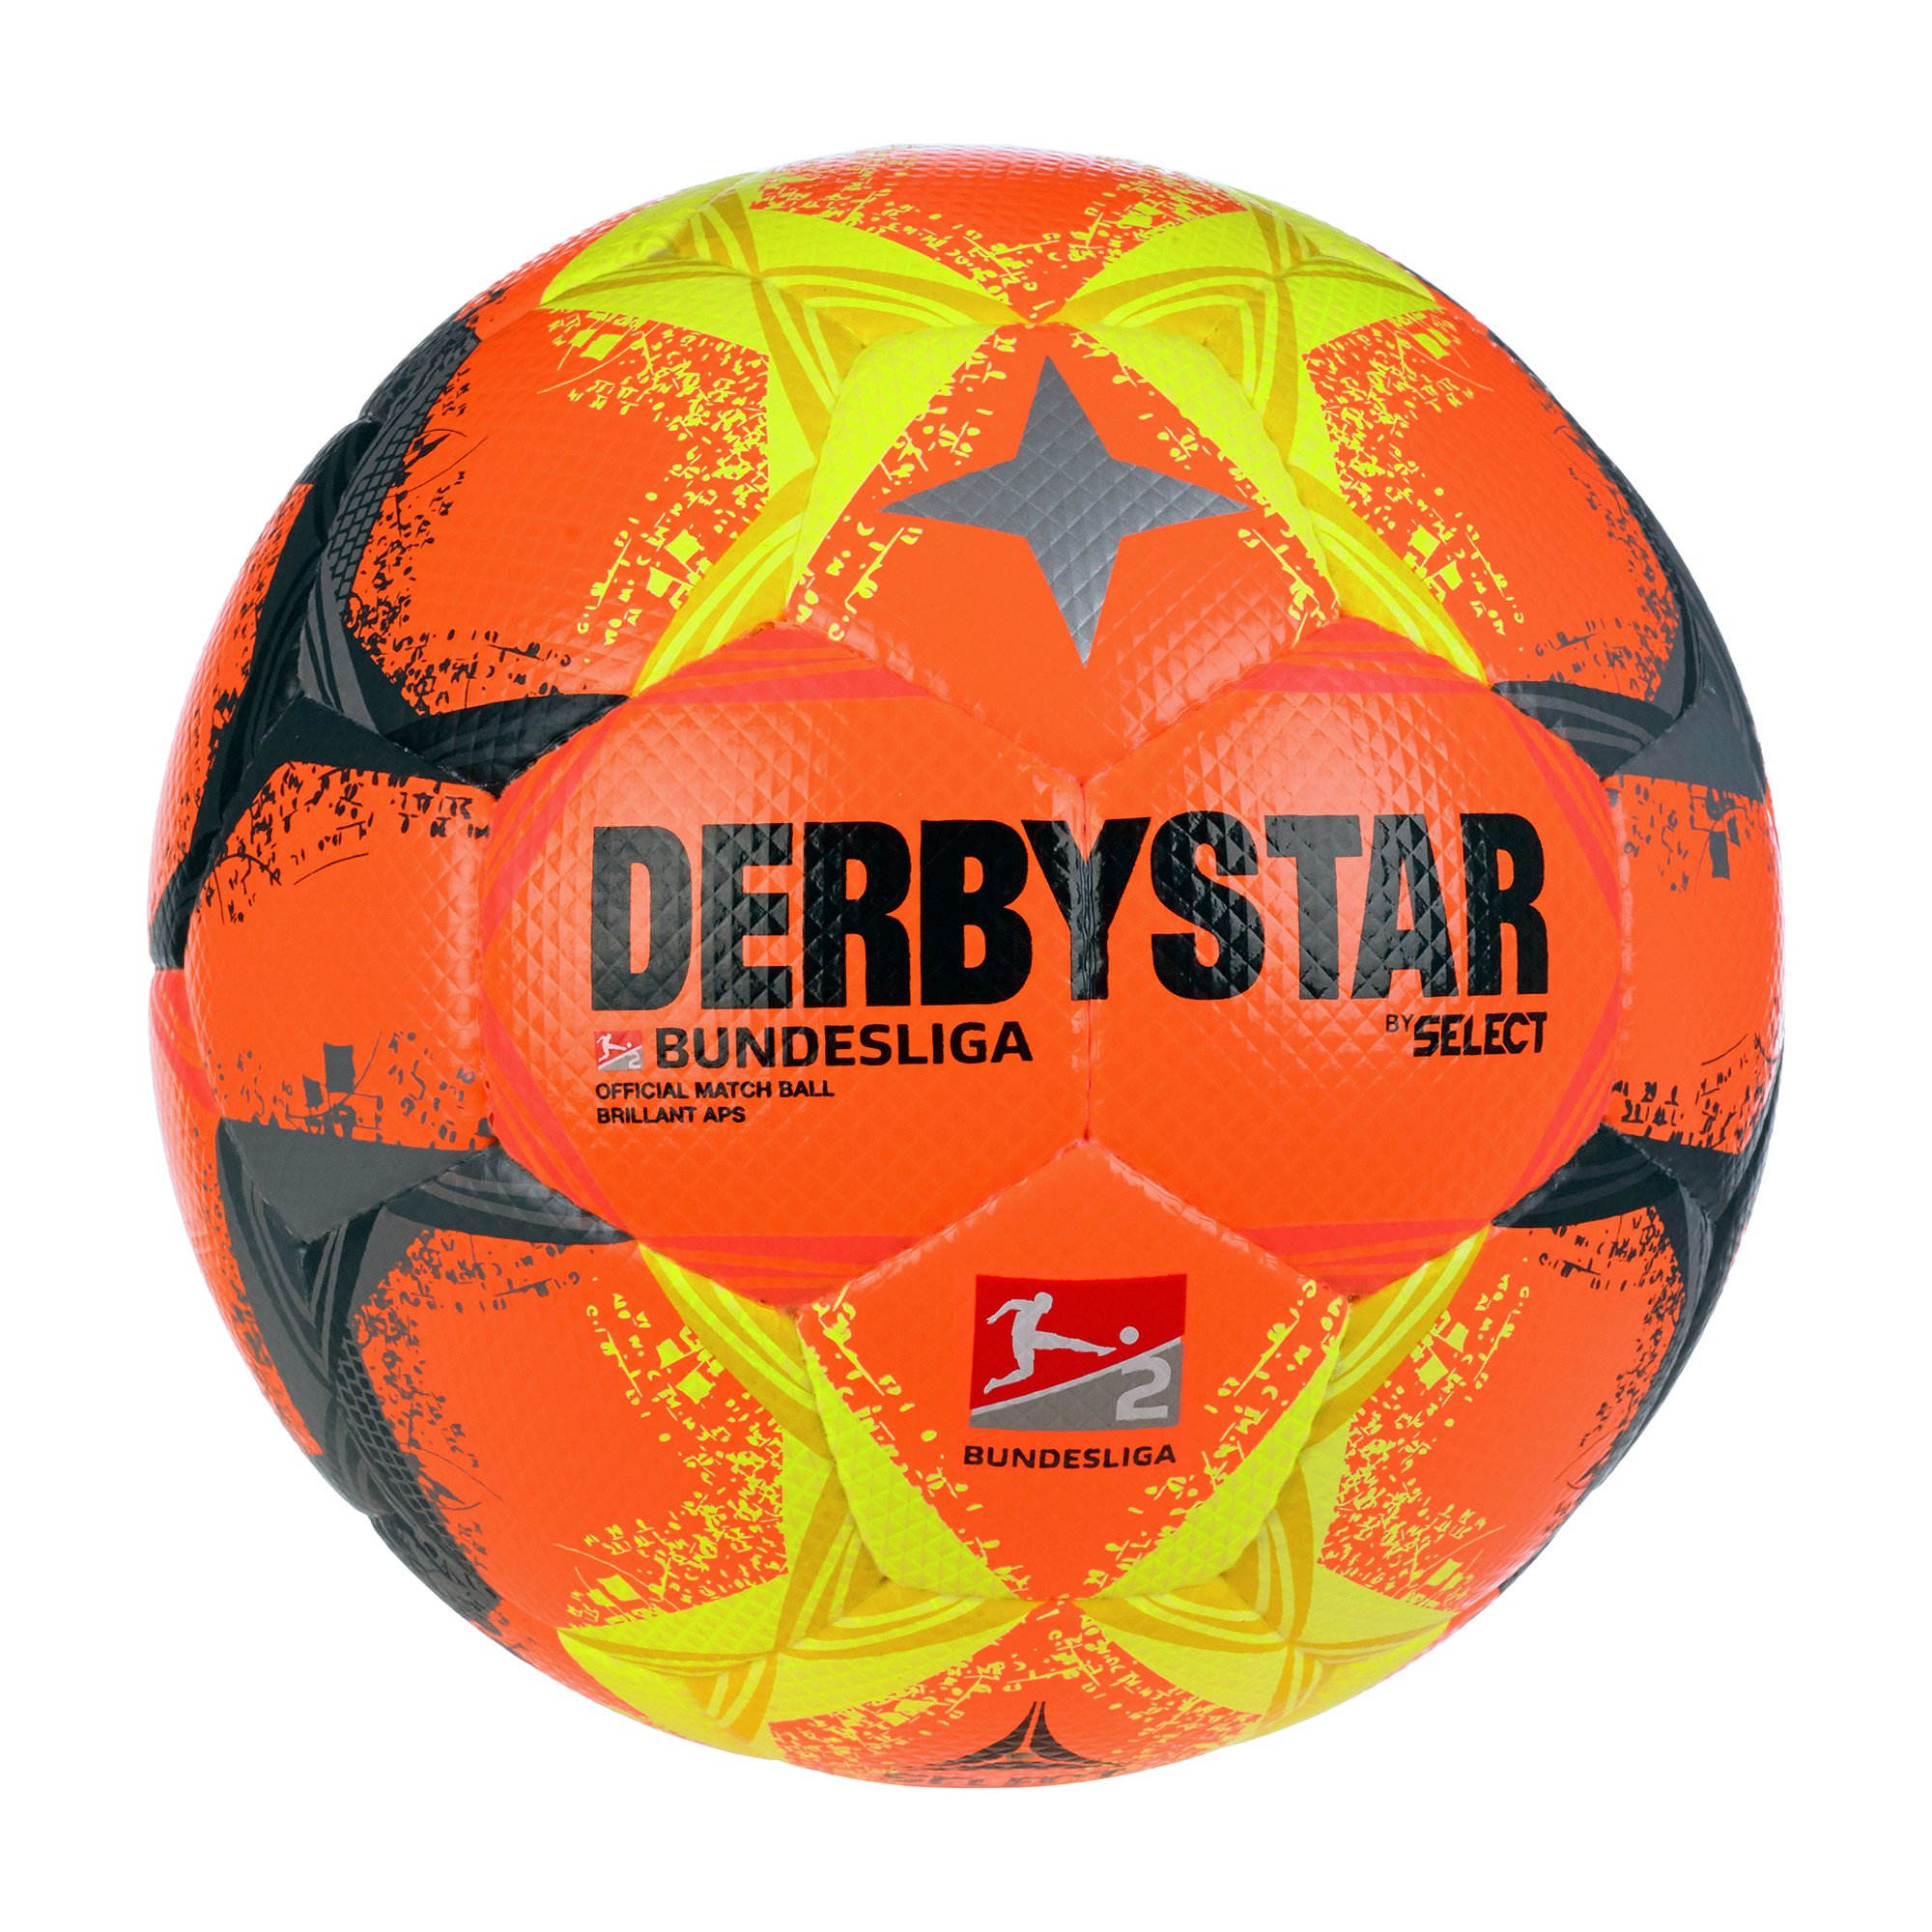 Derbystar 2. Bundesliga Brillant APS High Visible v22 - Fussbälle